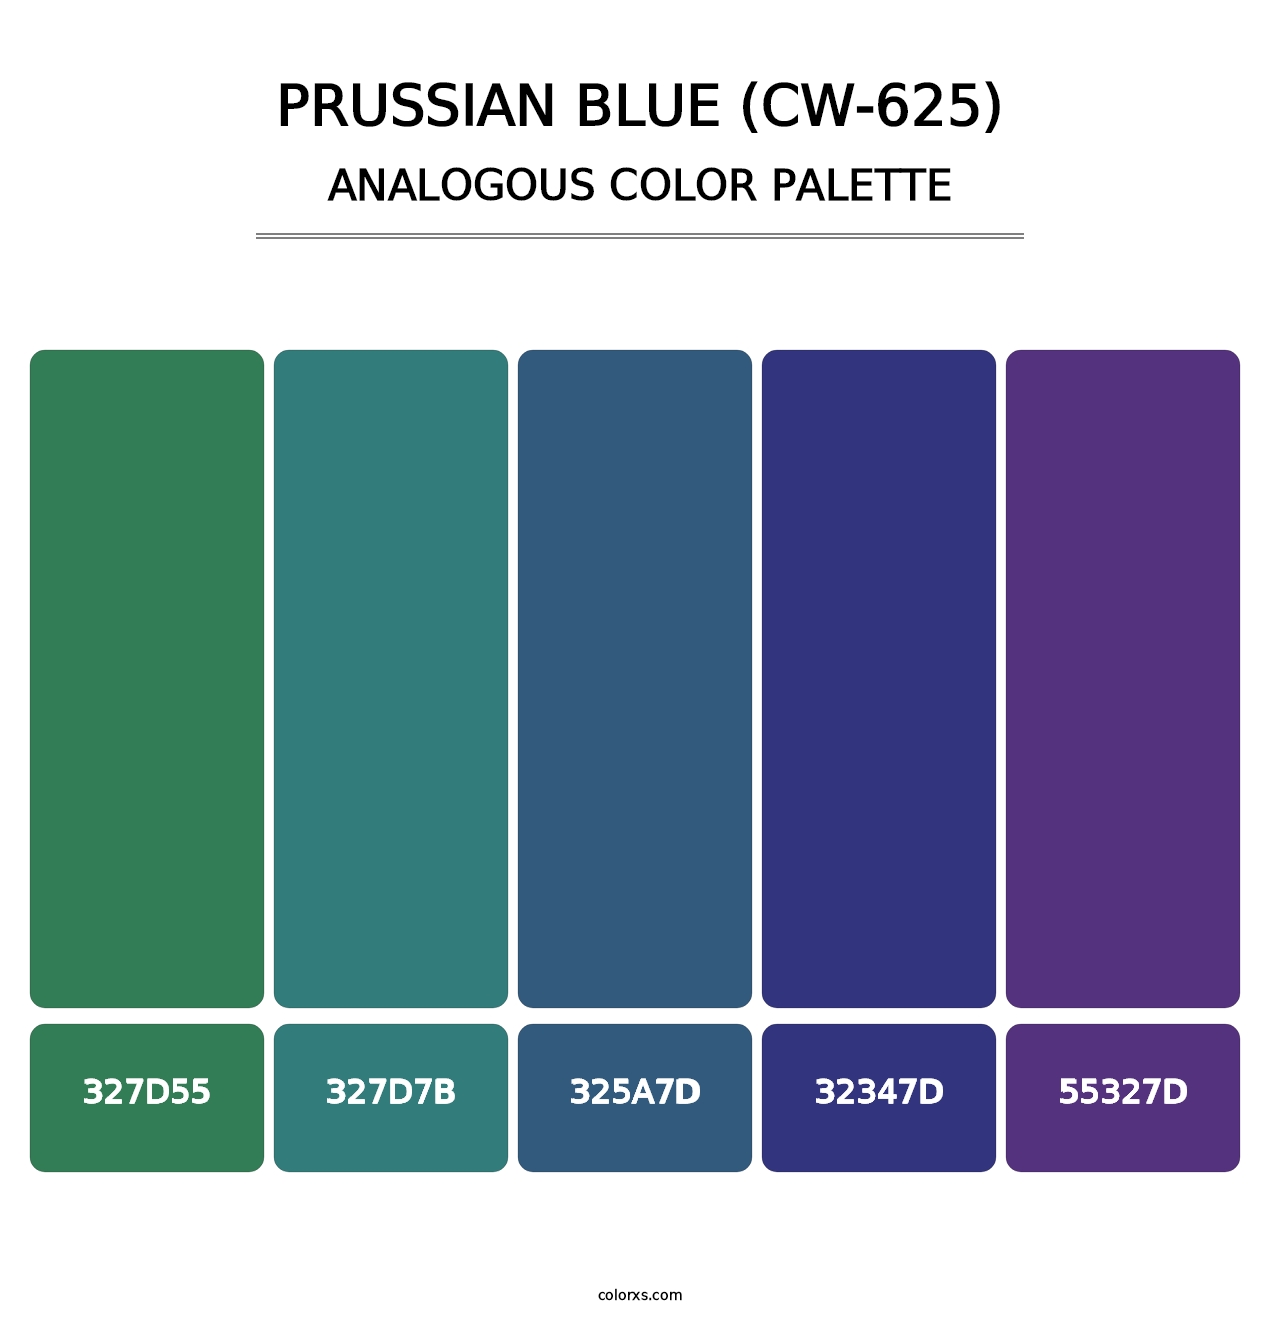 Prussian Blue (CW-625) - Analogous Color Palette